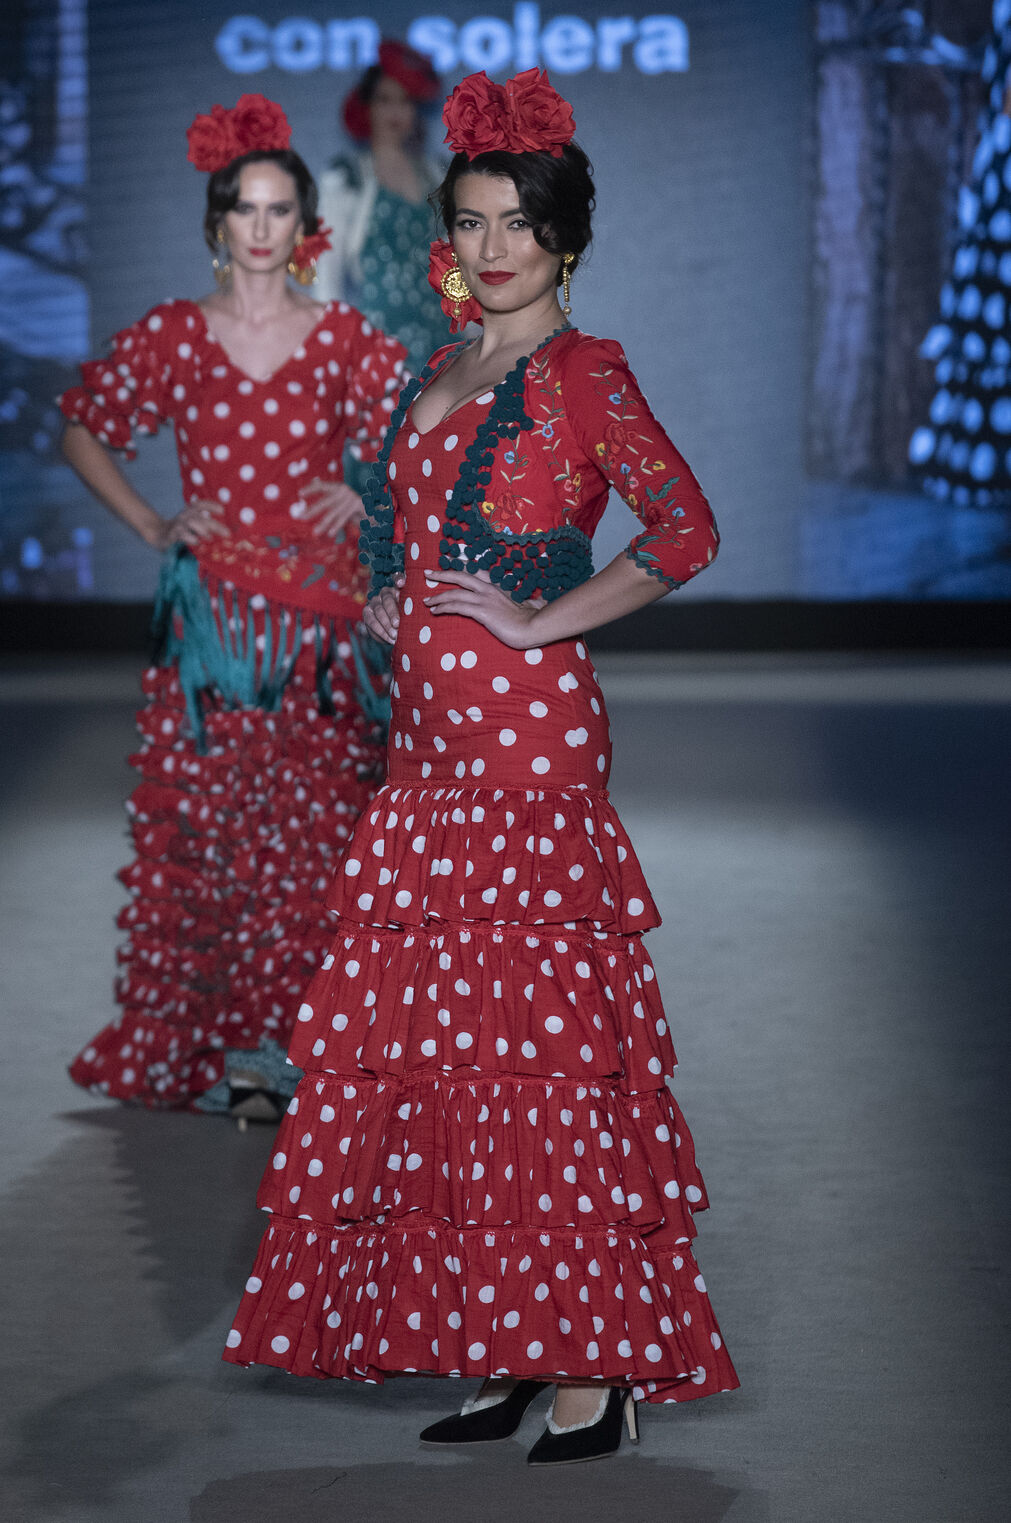 El desfile de Pitusa Gasul en We Love Flamenco 2022, todas las fotos